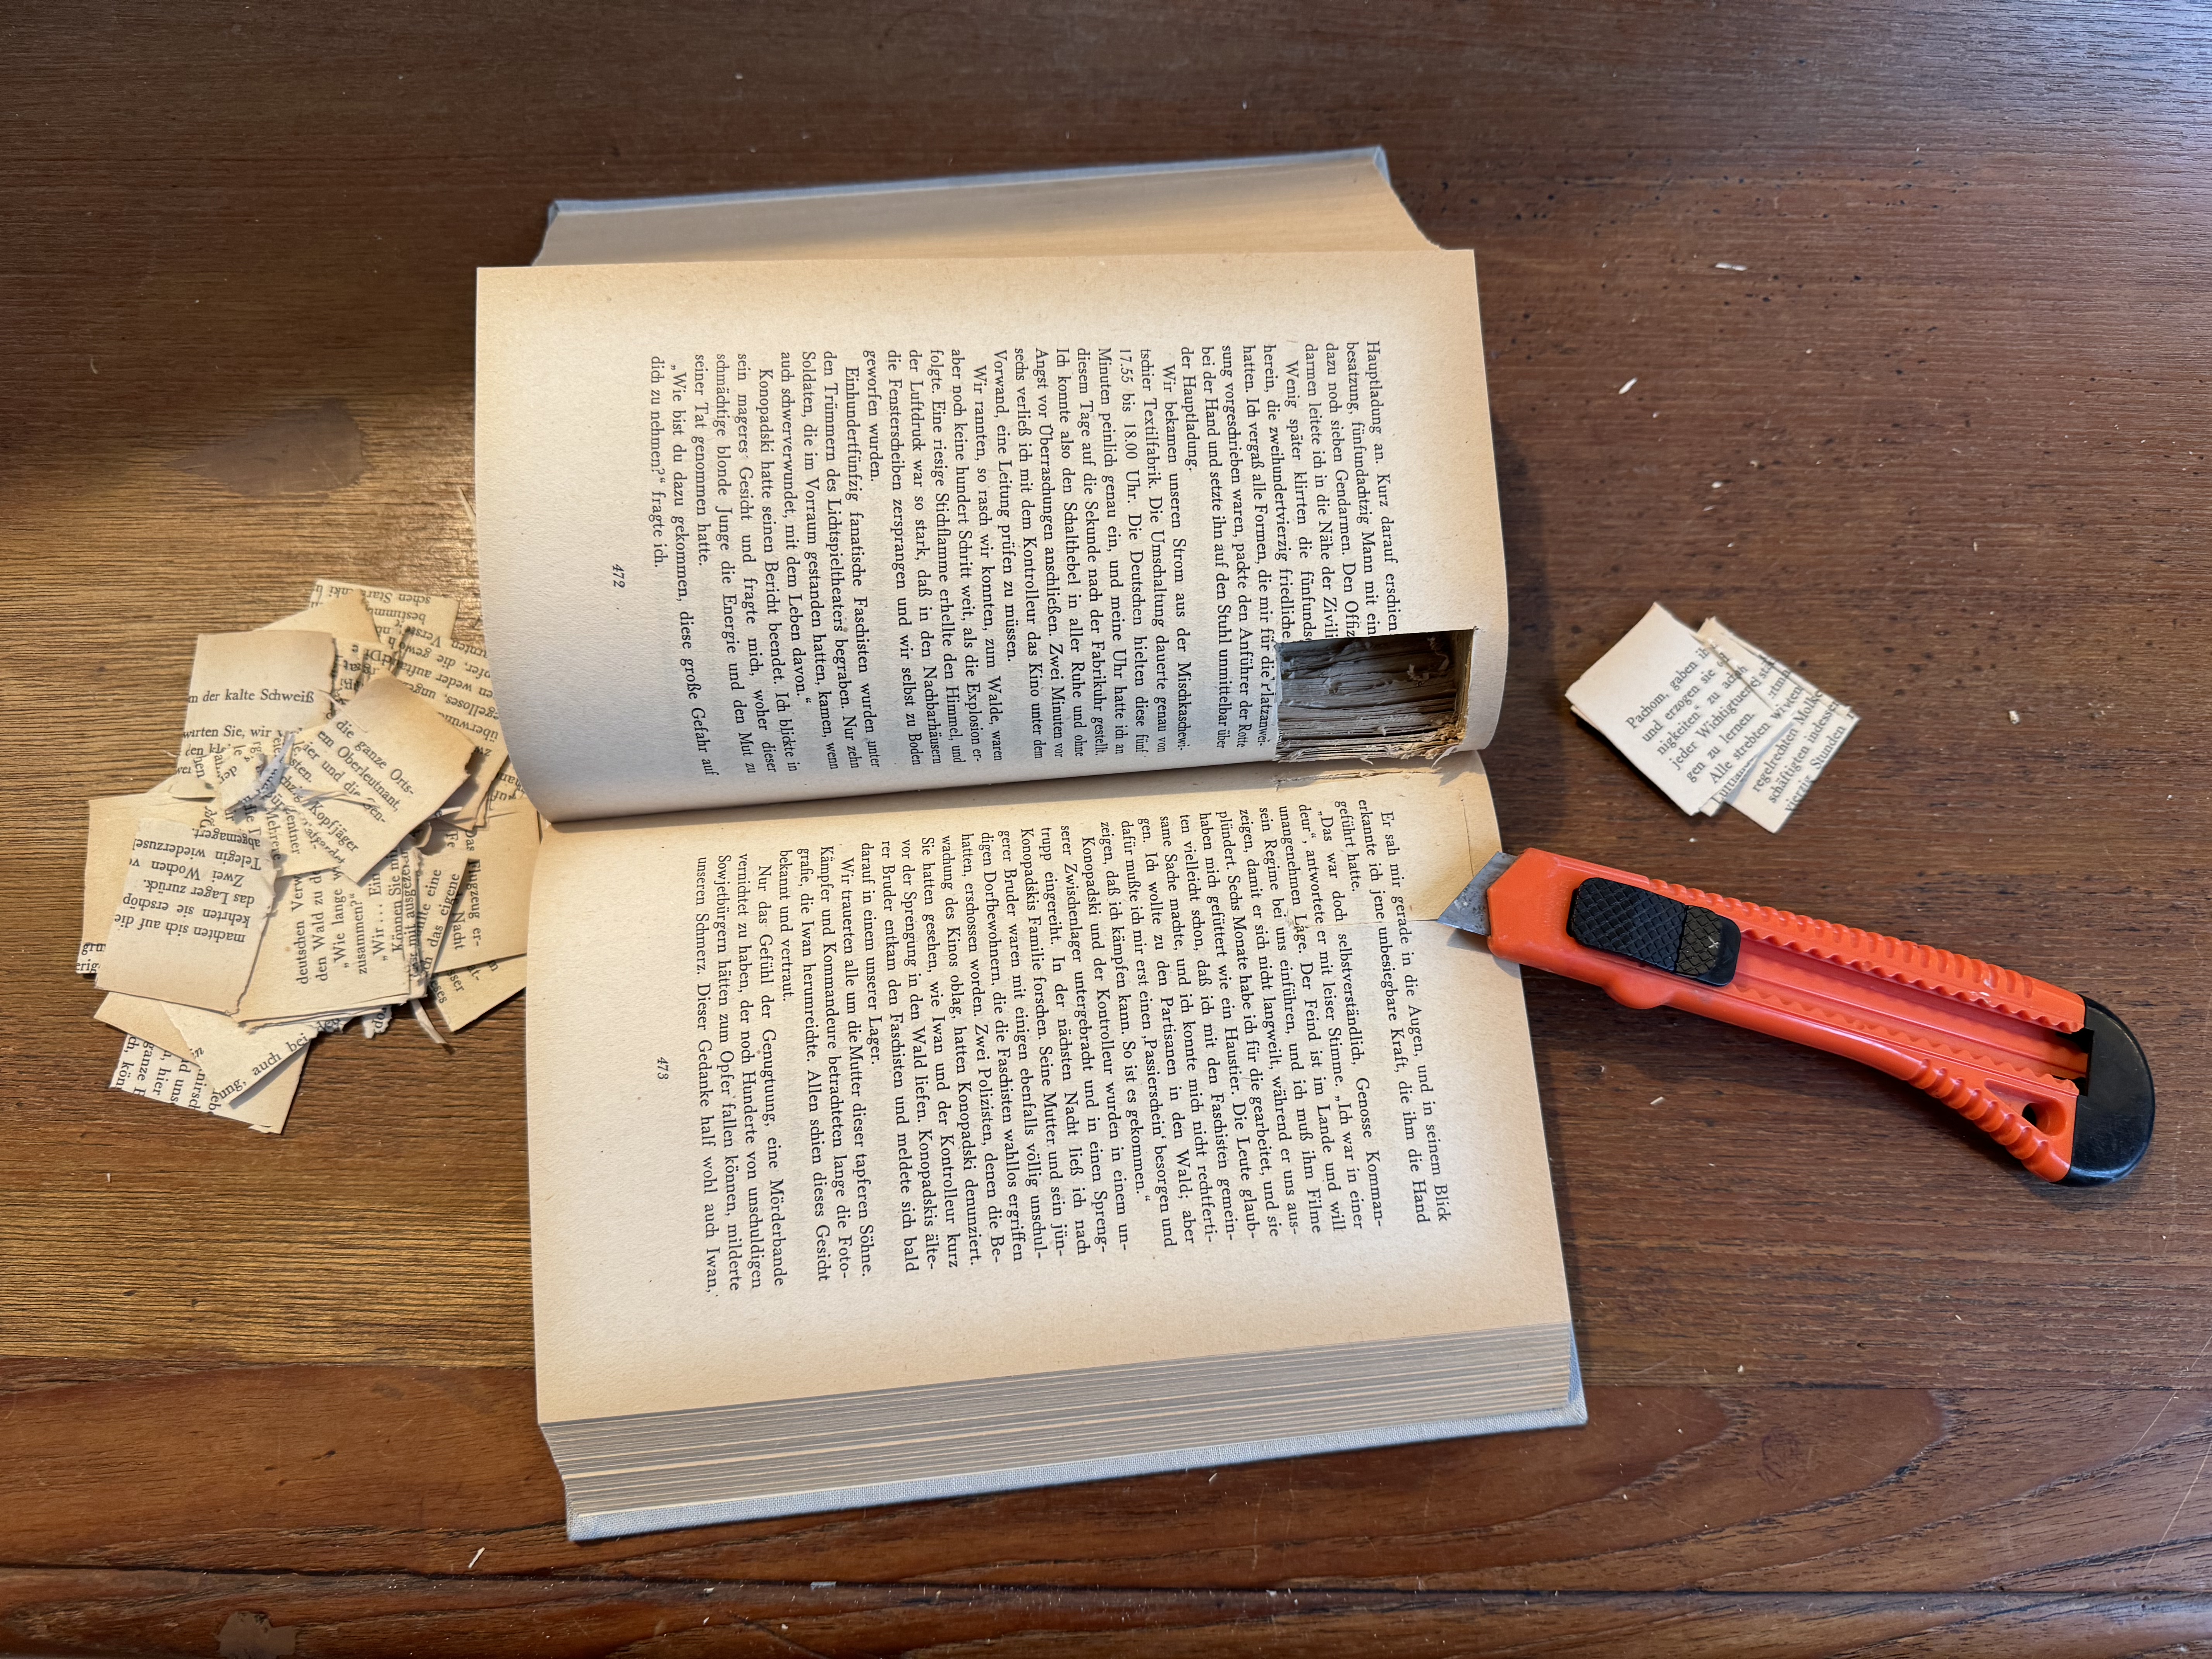 Aufgeklapptes Buch mit einem ausgeschnittenen Versteck für eine Kamera. Daneben ein Teppichmesser und Papierschnippsel